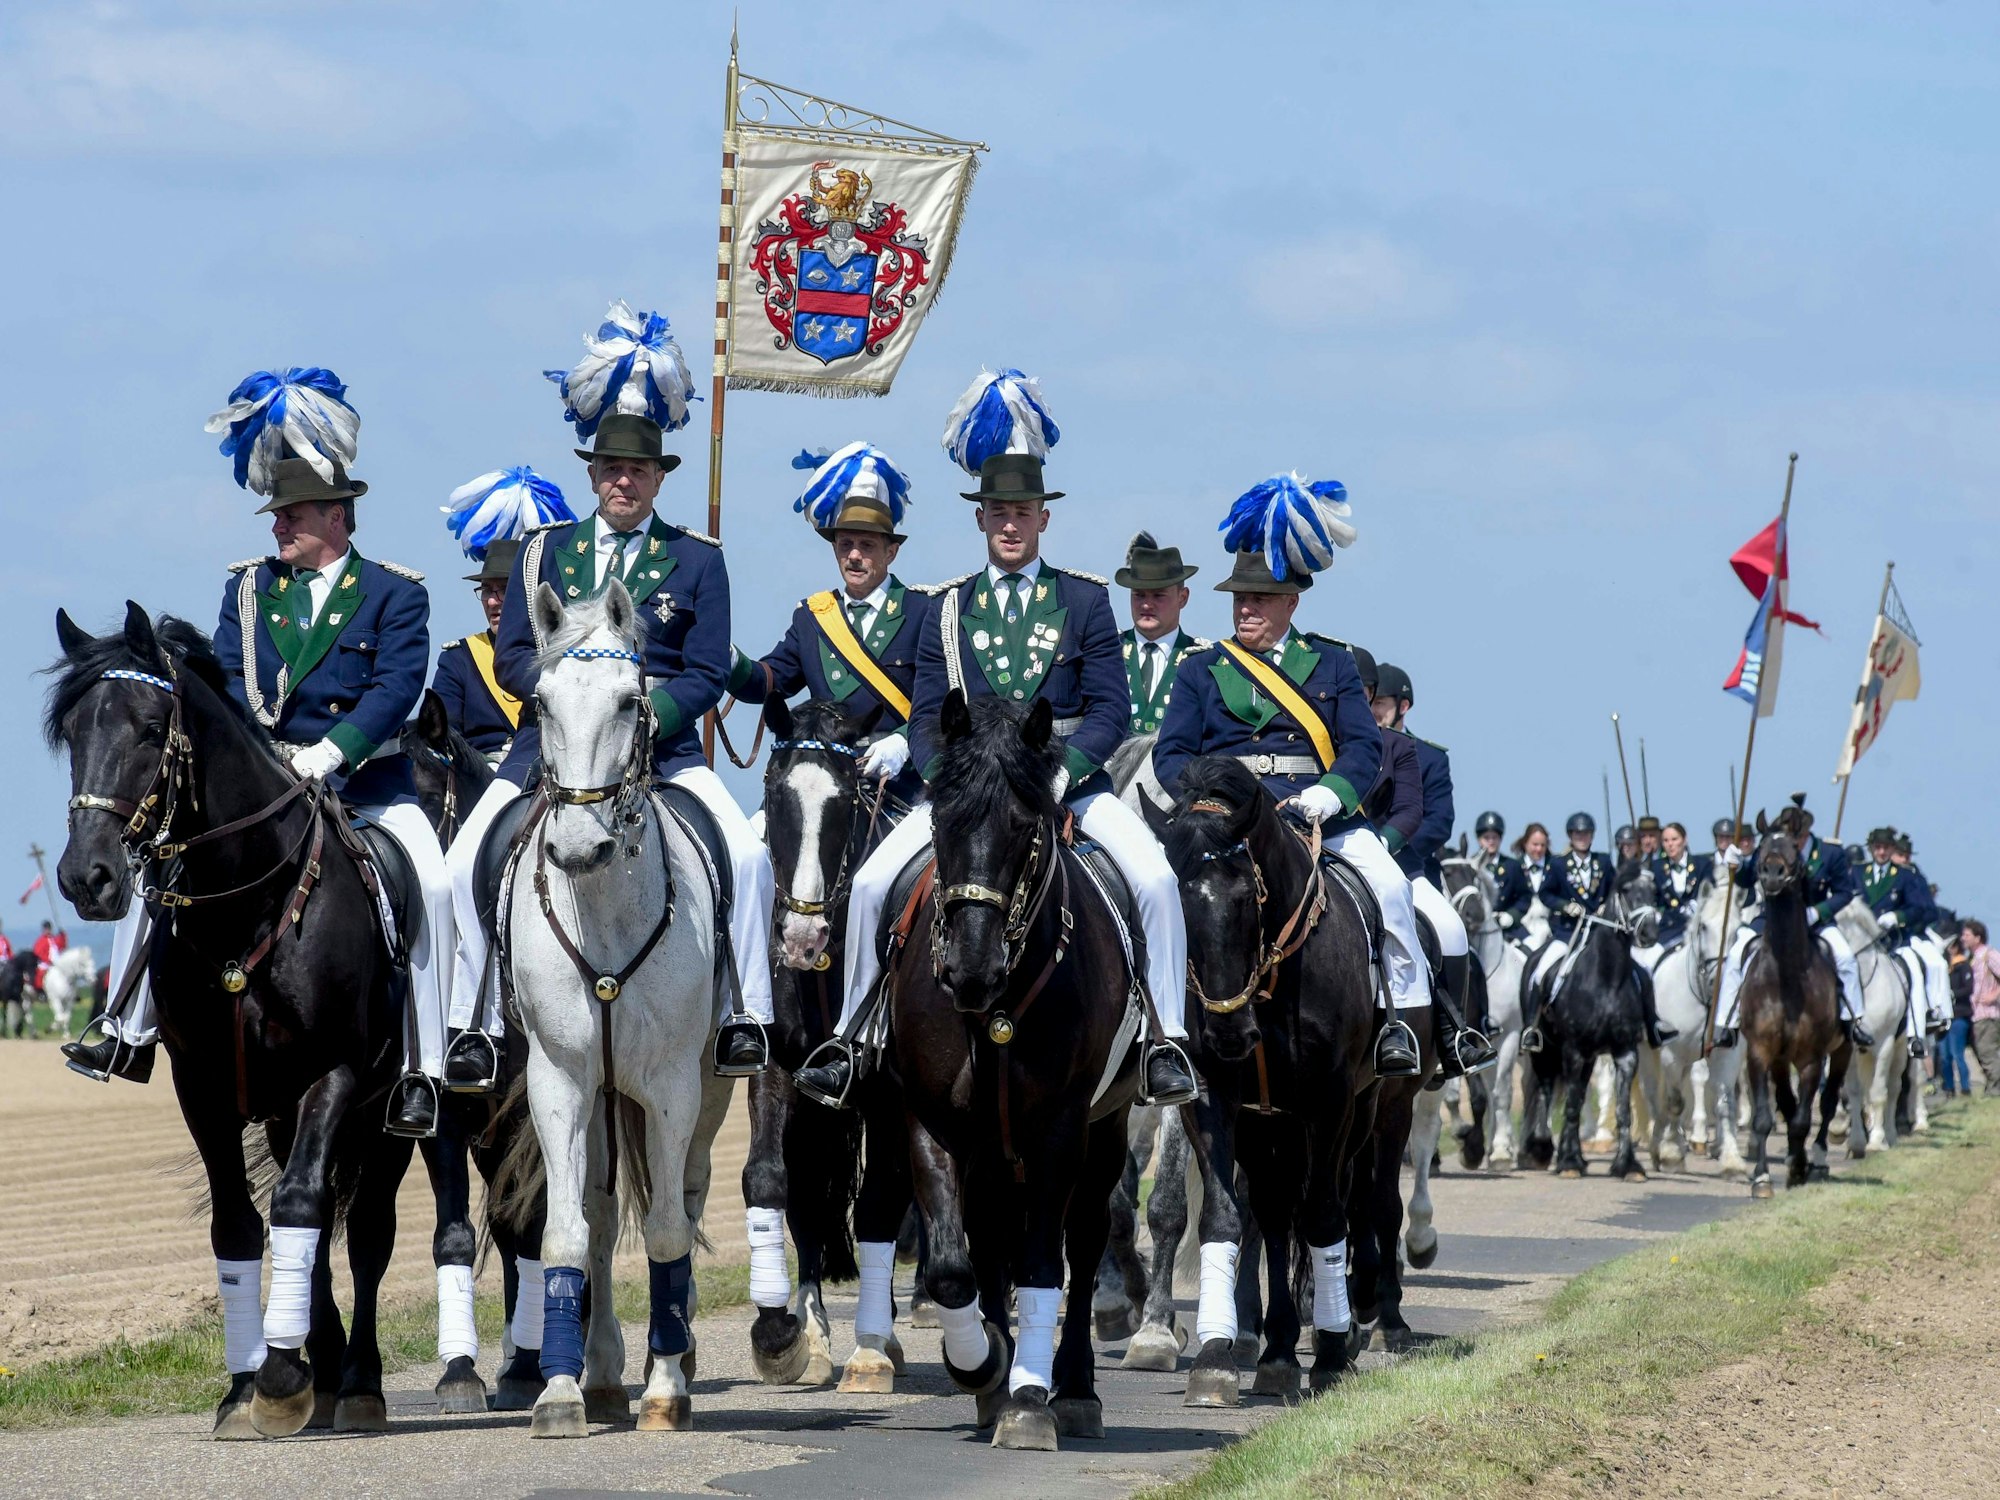 Hoch zu Ross die Reiterpilger, angeführt wurden sie von den Sebastianus-Schützen in blauen Uniformen, die Kunibertus Schützen in Grün bildeten das Schlusslicht.